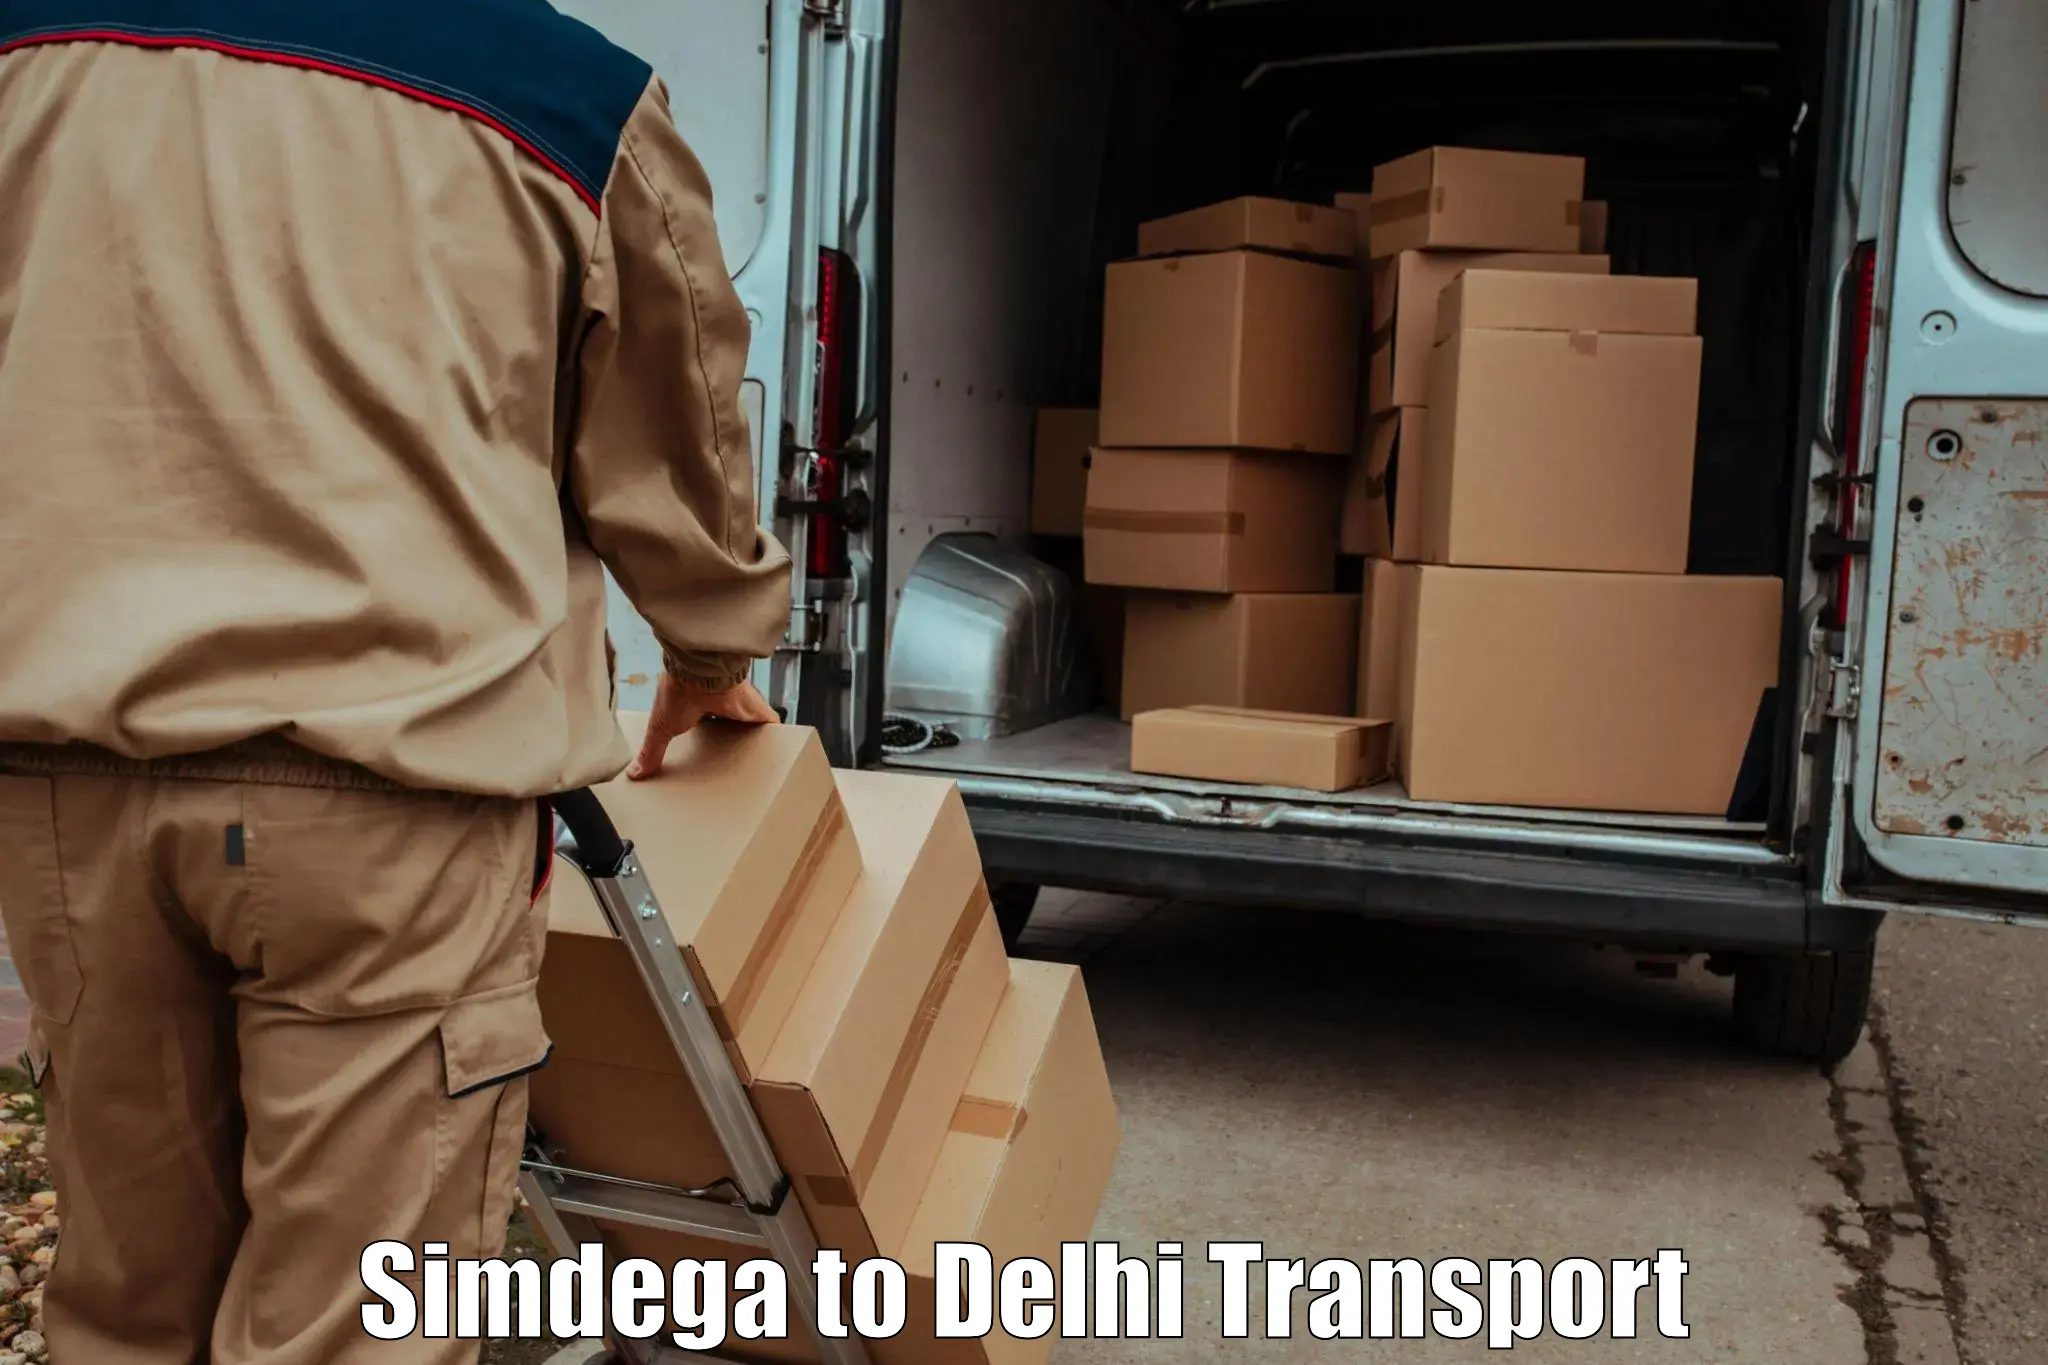 Transportation services Simdega to Ashok Vihar